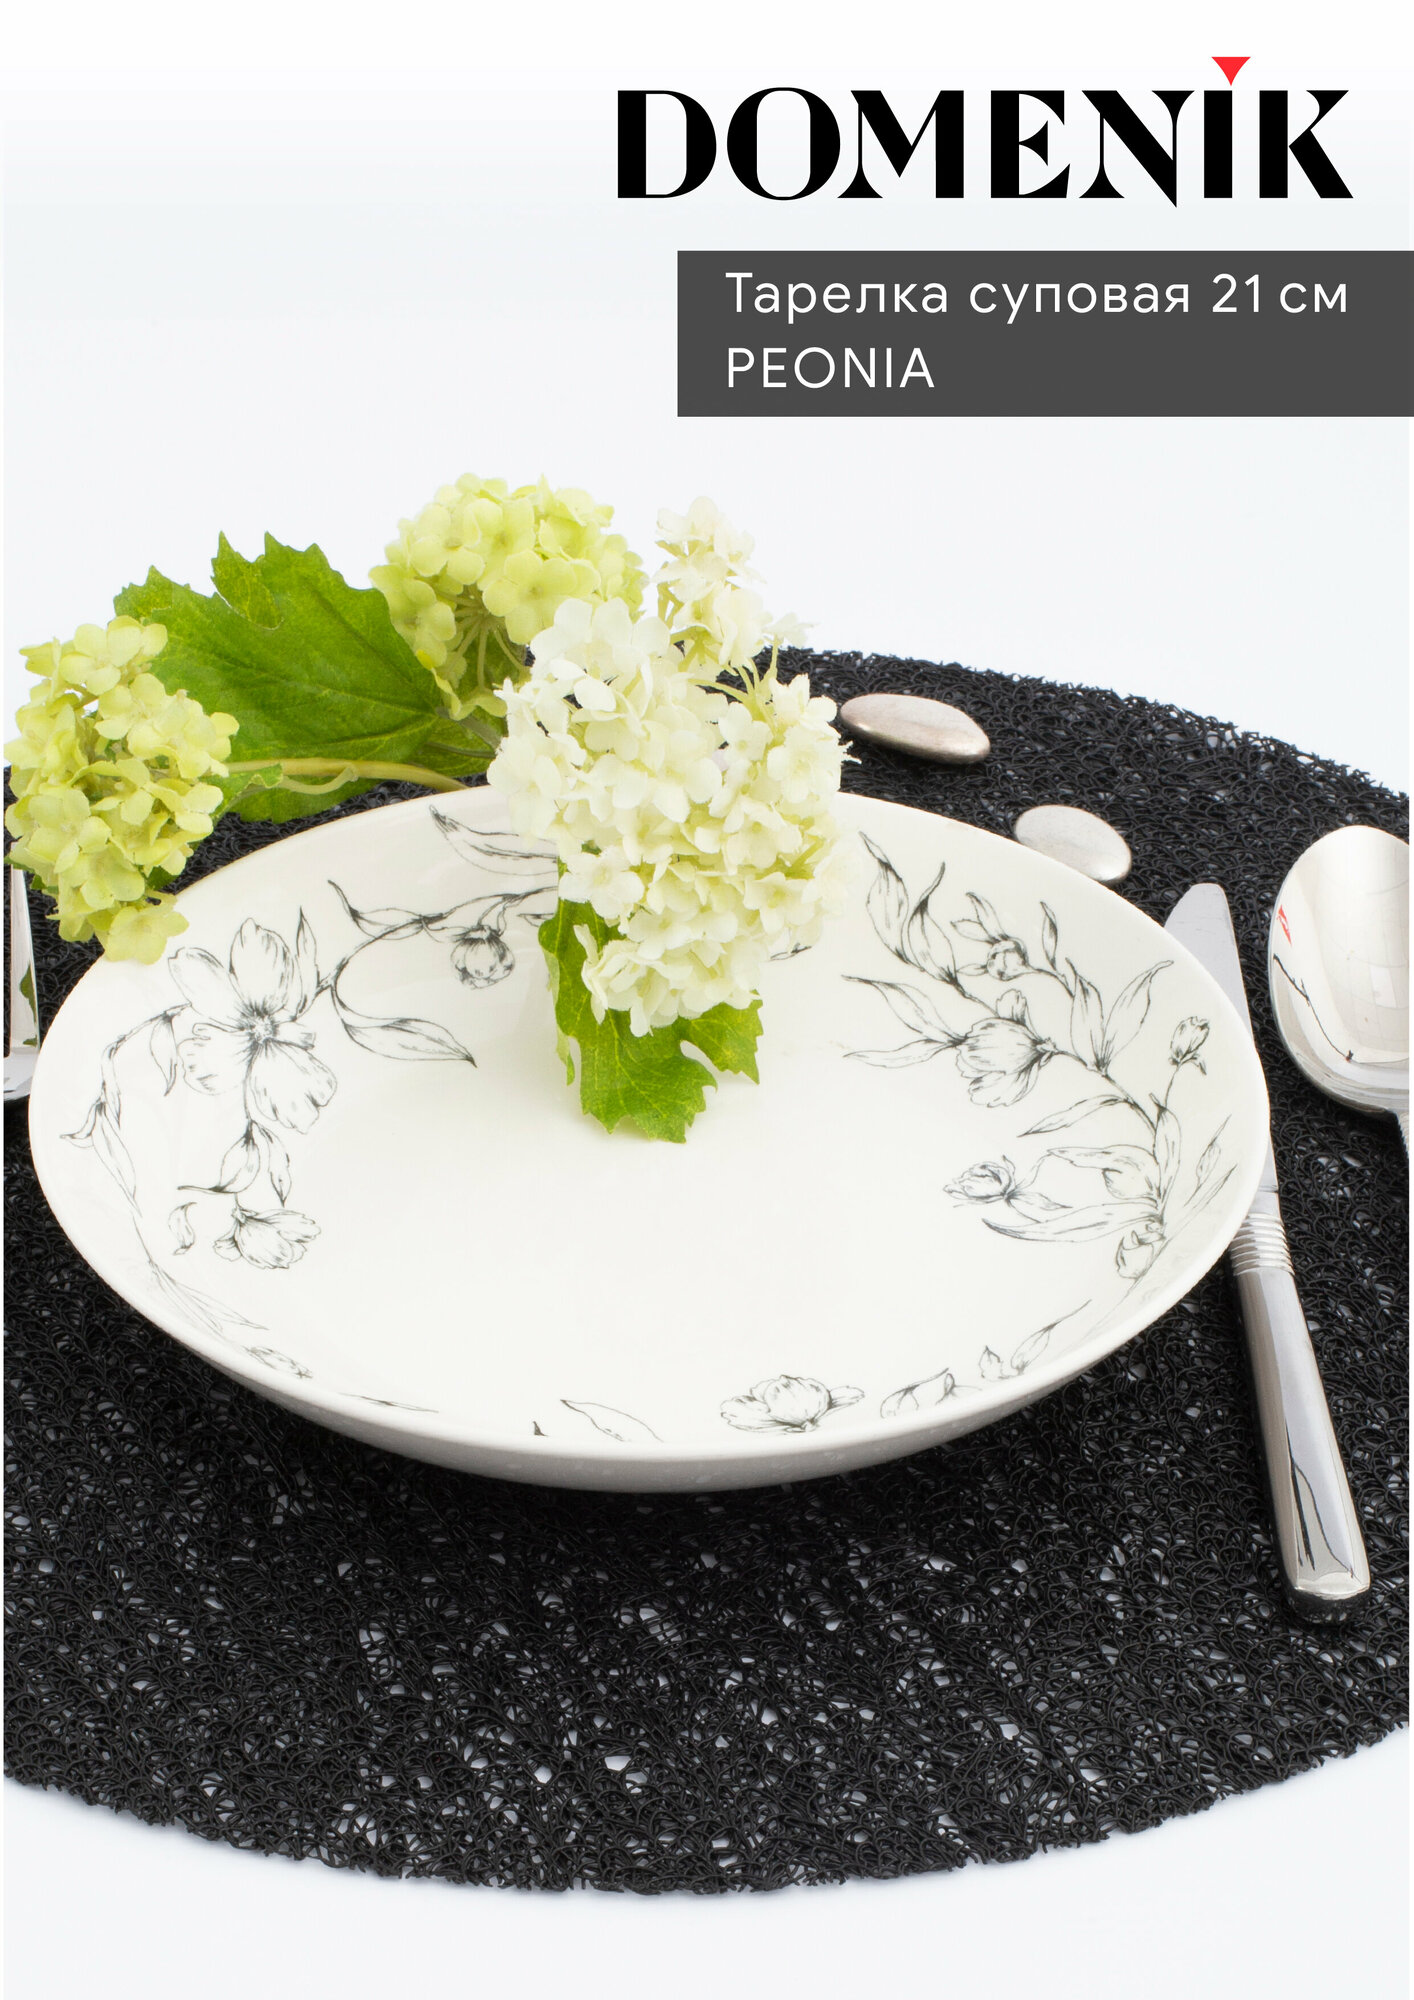 Domenik Тарелка суповая Peonia 21 см